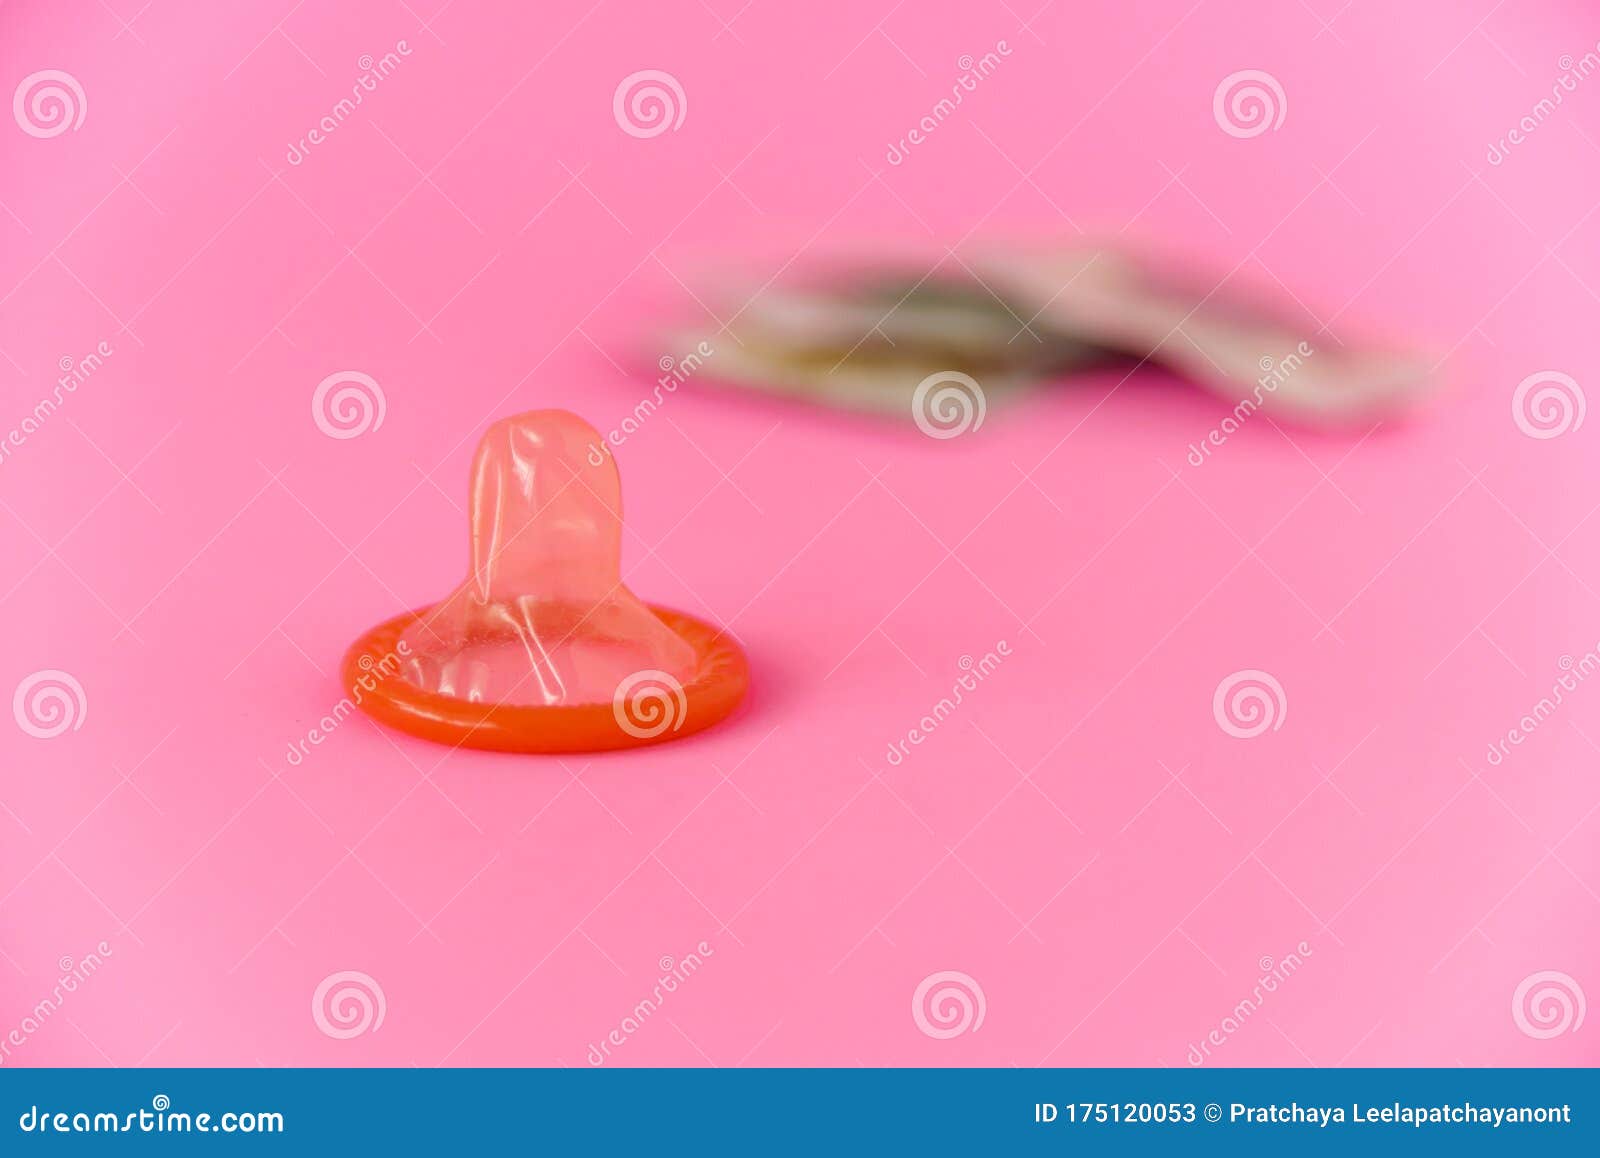 вероятность что сперма вытечет из презерватива фото 91